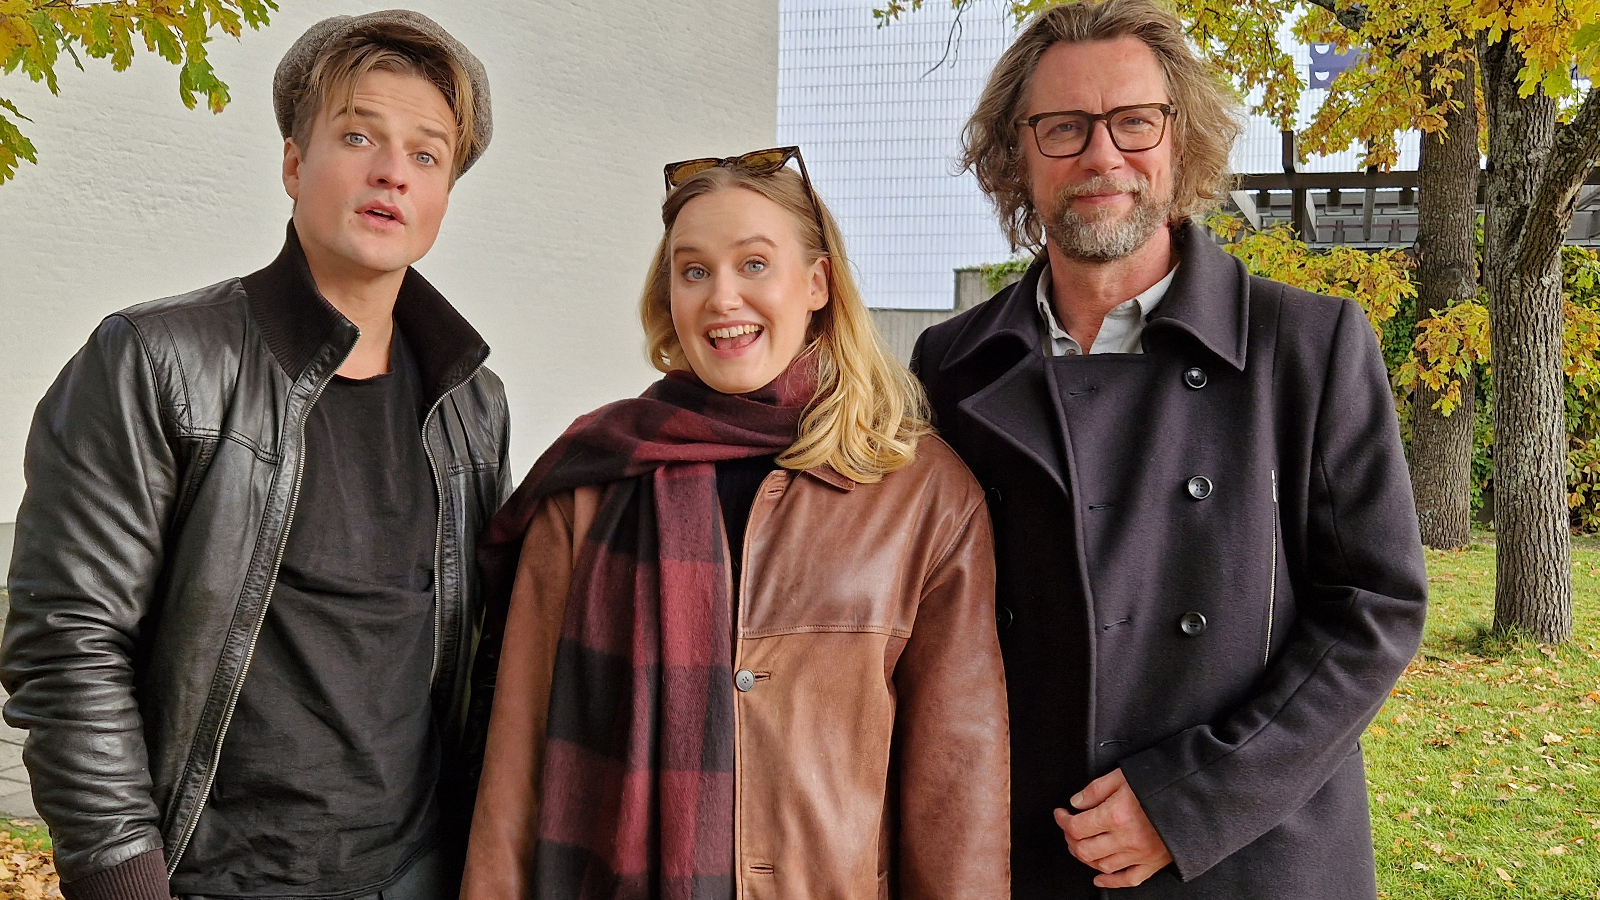 Kuvassa ovat Mikael Saari mustassa nahkatakissa, Aurora Manninen ruskeassa nahkatakissa ja Antti Reini mustassa takissa. Kuva on puolivartalokuva ja otettu ulkona.